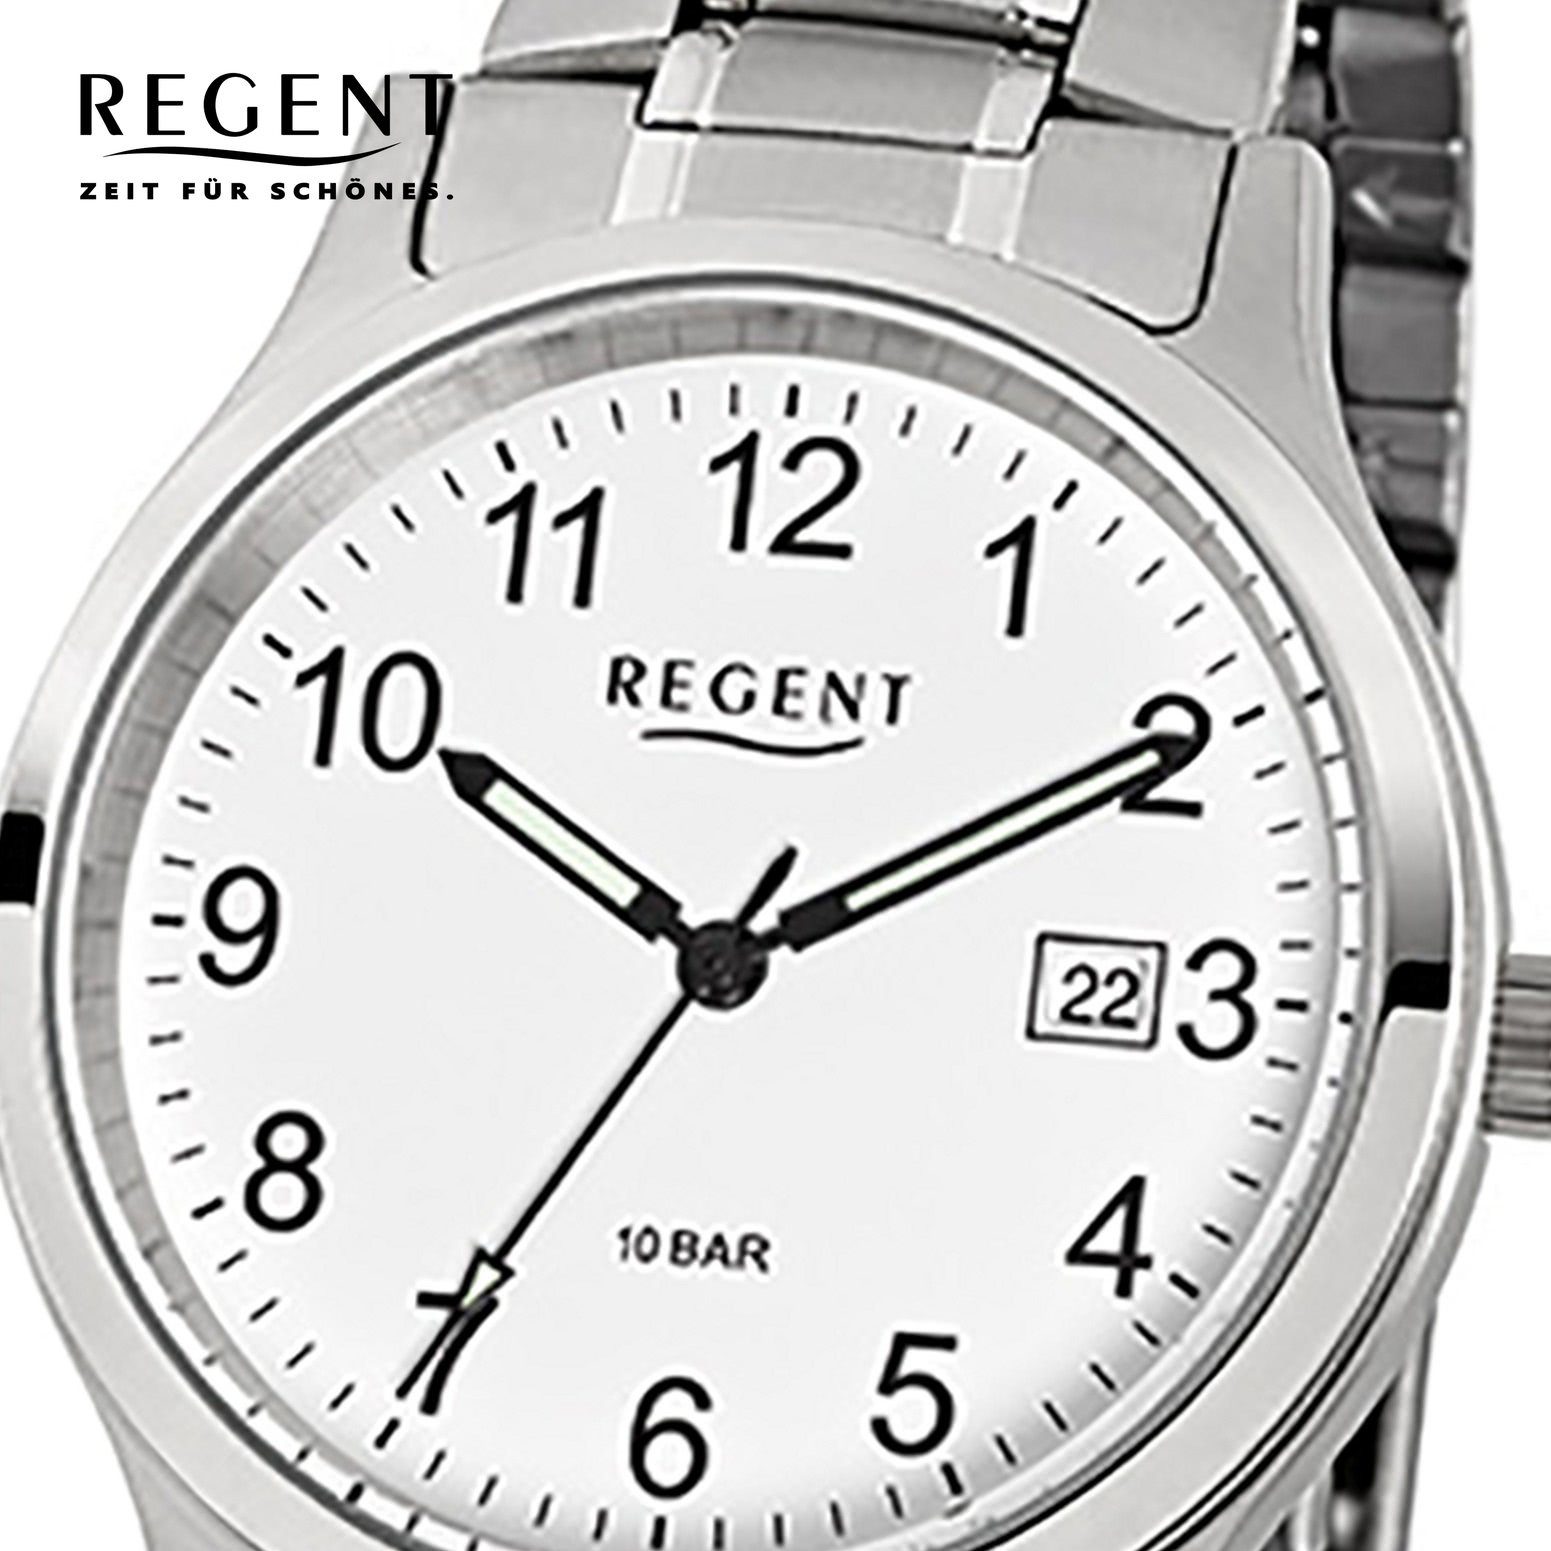 Edelstahlarmband Quarzuhr Regent (ca. 38mm), mittel rund, grau Herren Armbanduhr Herren-Armbanduhr Regent silber Analog,